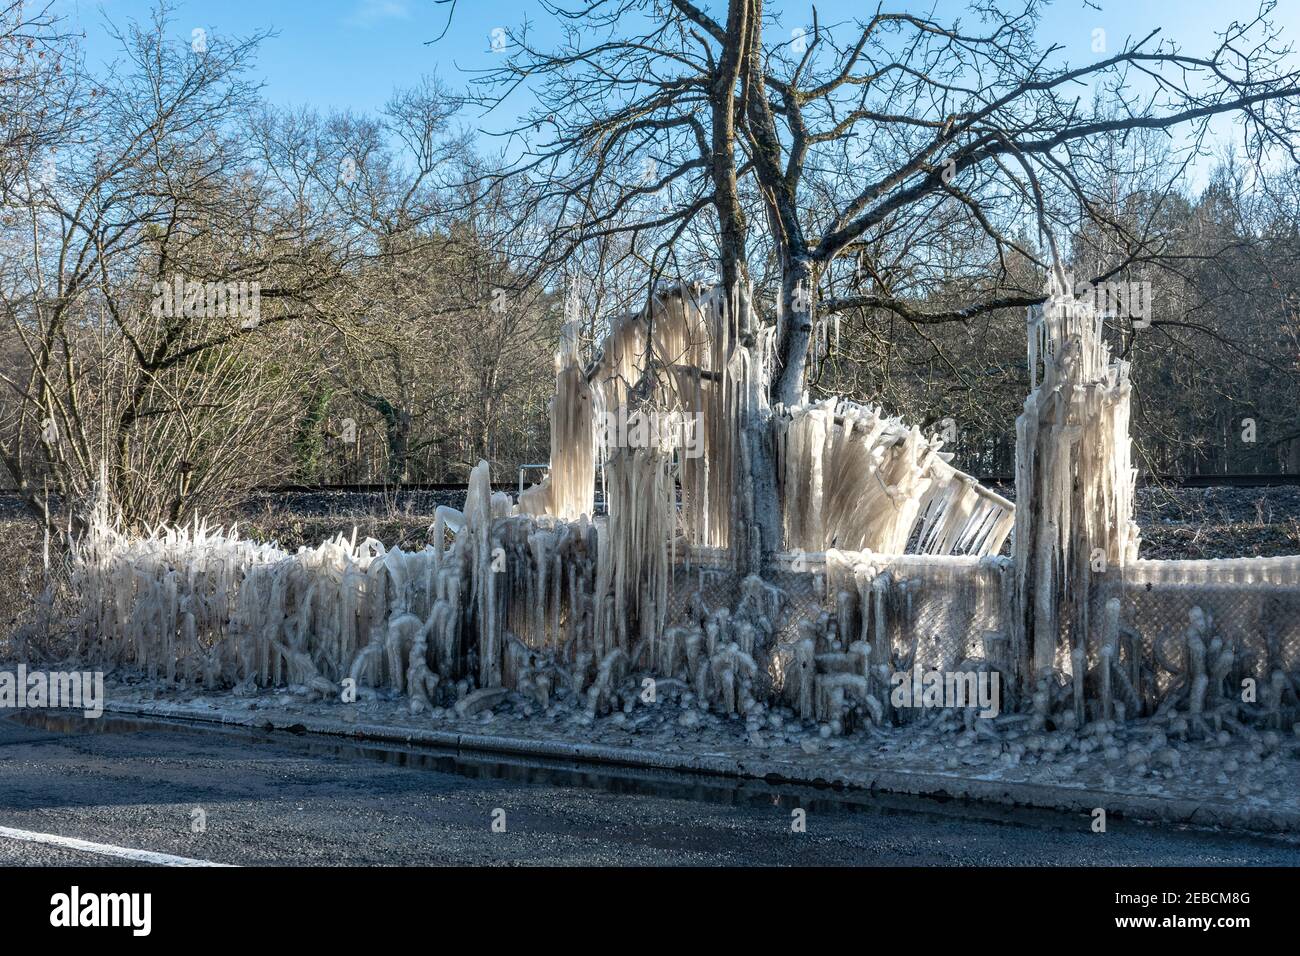 Eiszapfen und Eisformationen auf Bäumen am Straßenrand während eines kalten Winters bekannt als das Biest aus dem Osten in Hampshire, Großbritannien, im Winter, Mitte Februar 2021 Stockfoto